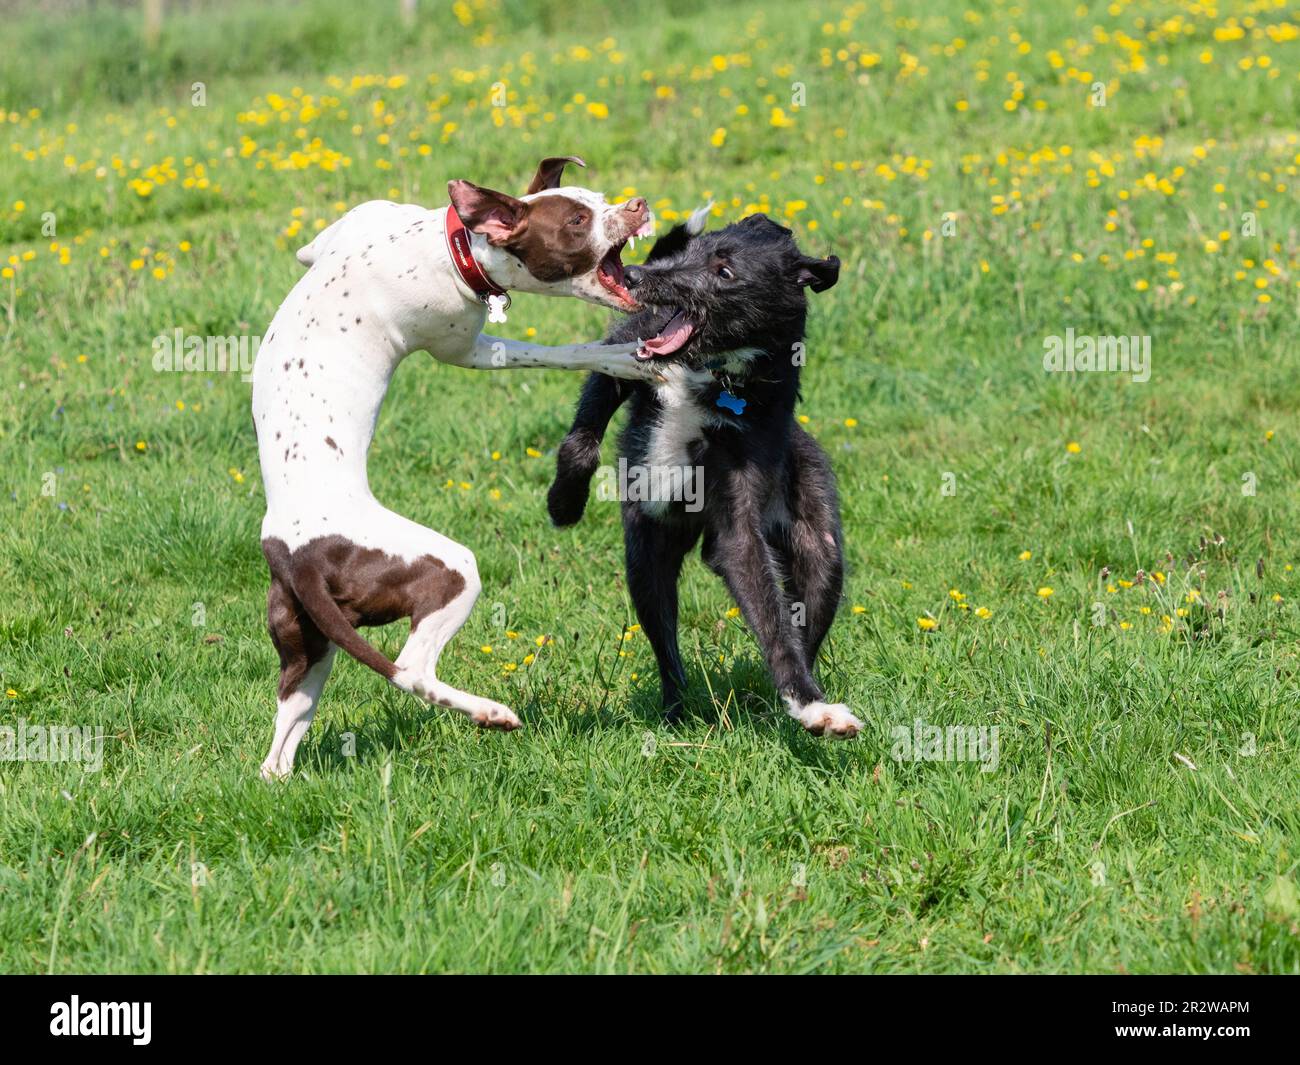 Narla, un Dalmation x Bull Terrier, y Sampson, un deerhound x greyhound, juegan a pelear en un prado del Reino Unido Foto de stock